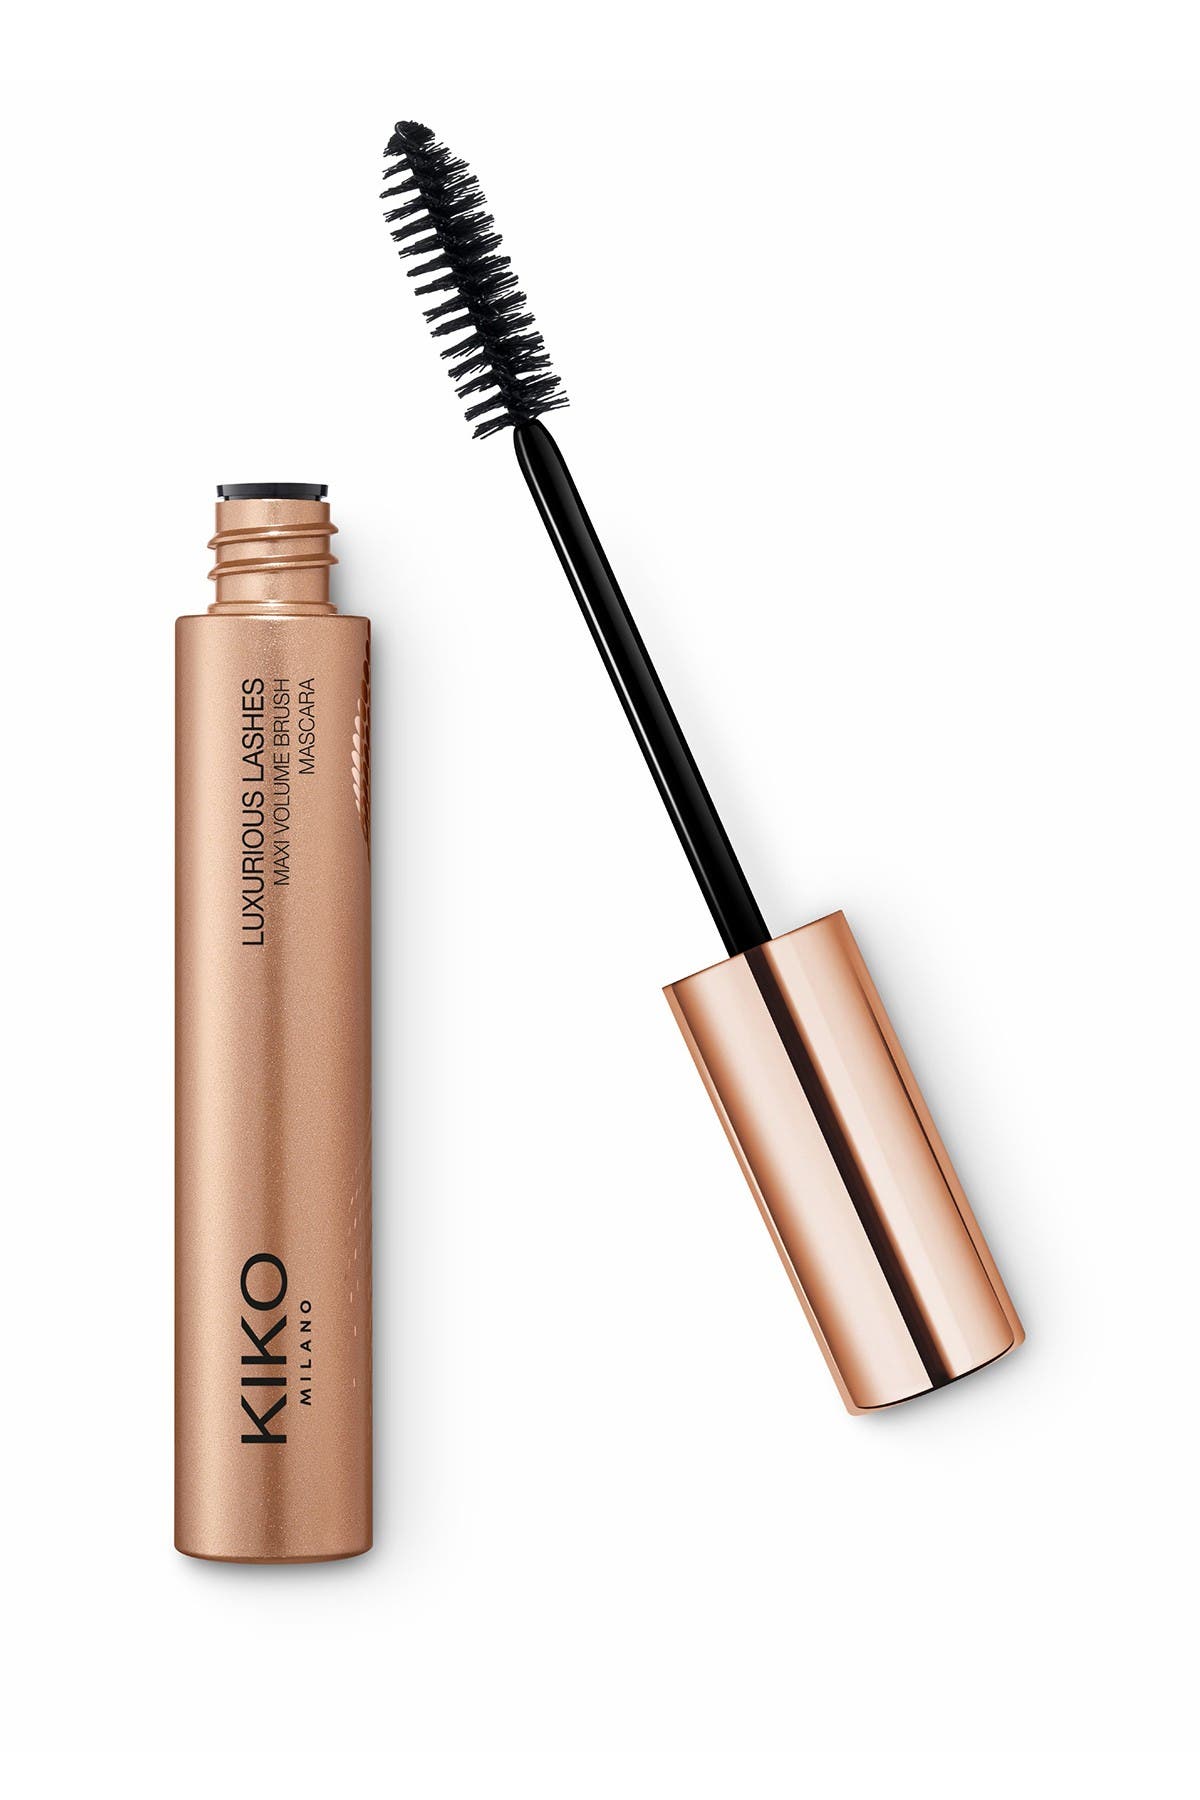 Kiko Milano Luxurious Lashes Maxi Volume Brush Mascara